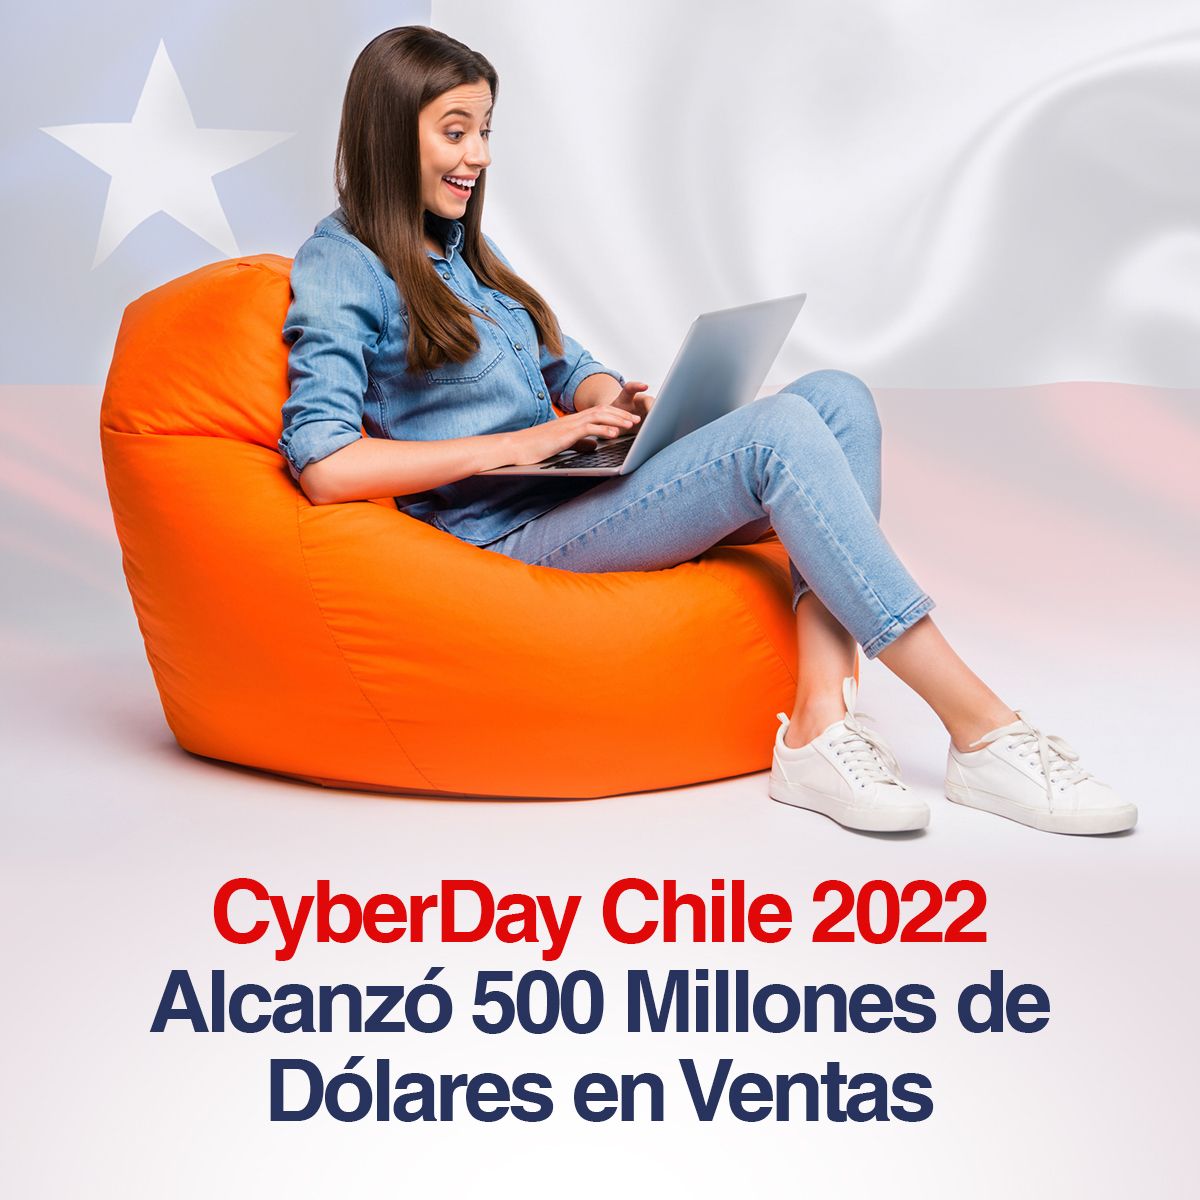 CyberDay Chile 2022 Alcanzó 500 Millones de Dólares en Ventas